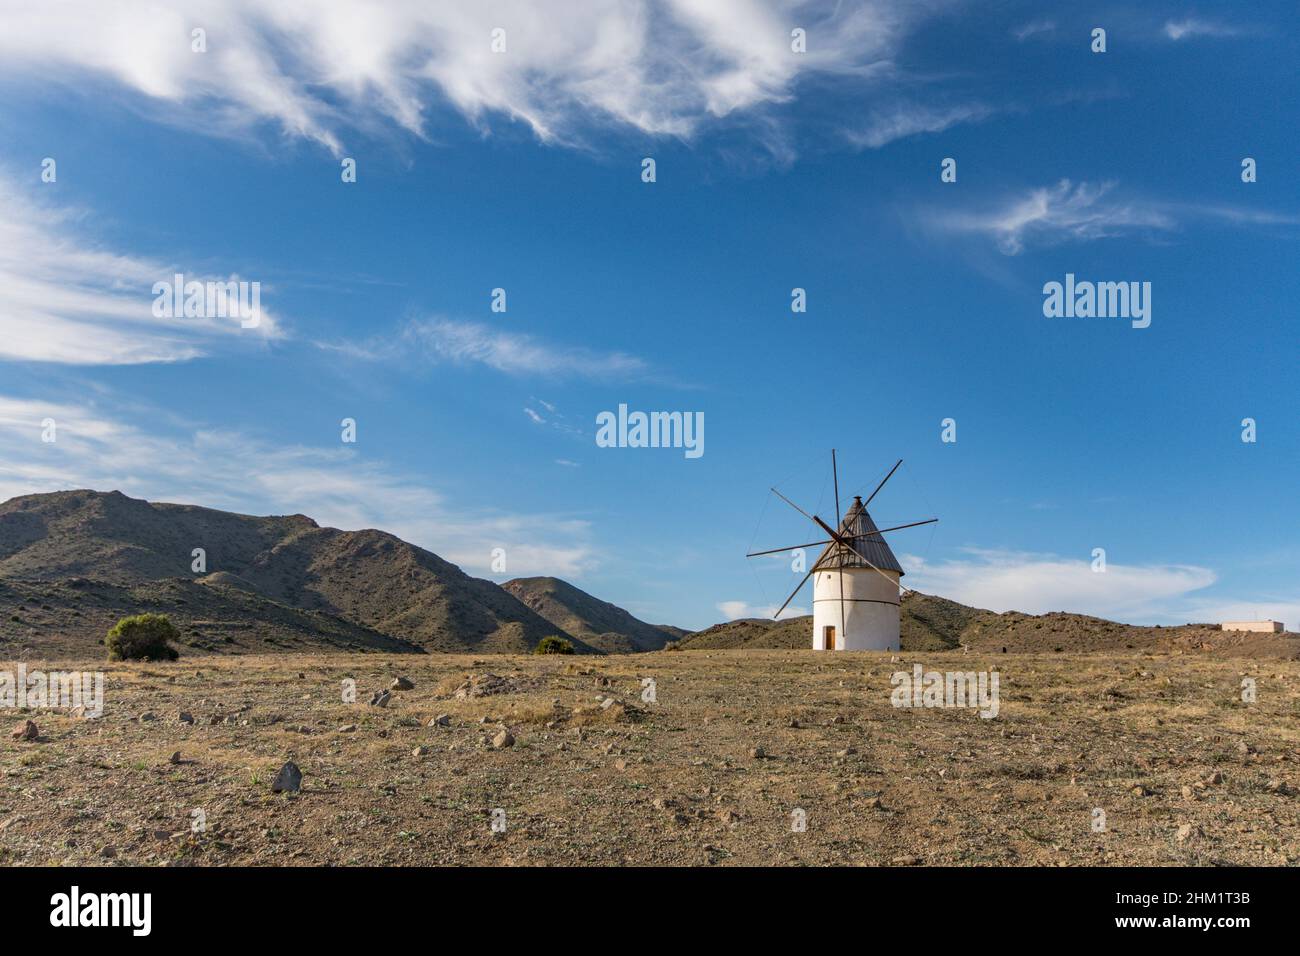 Cabo de gata Spain. Old restored Spanish windmill in El Pozo de los Frailes, Almeria, Andalucia, Spain. Stock Photo